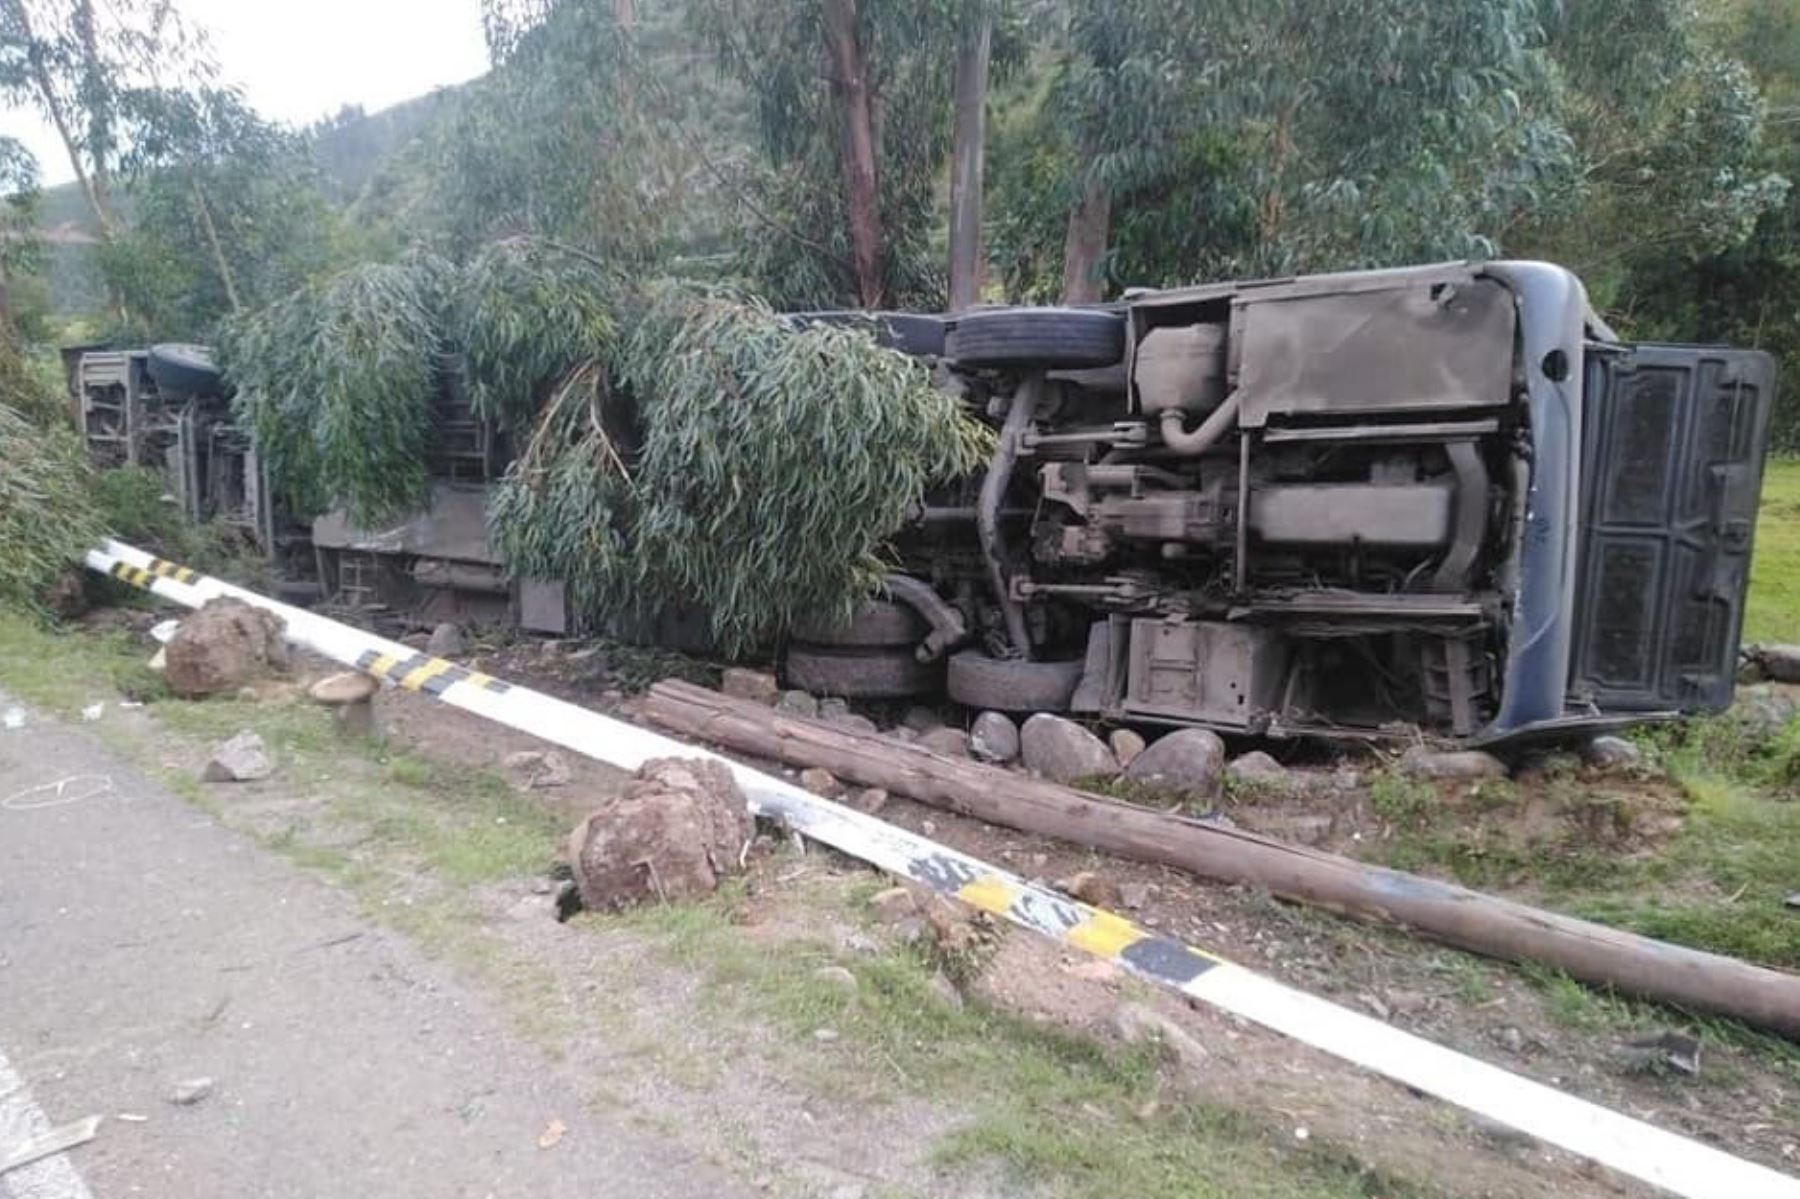 Indecopi confirmó que la empresa Megabus fue la responsable del accidente de tránsito en Ayacucho que dejó 2 muertos y 28 heridos. Foto: cortesía.